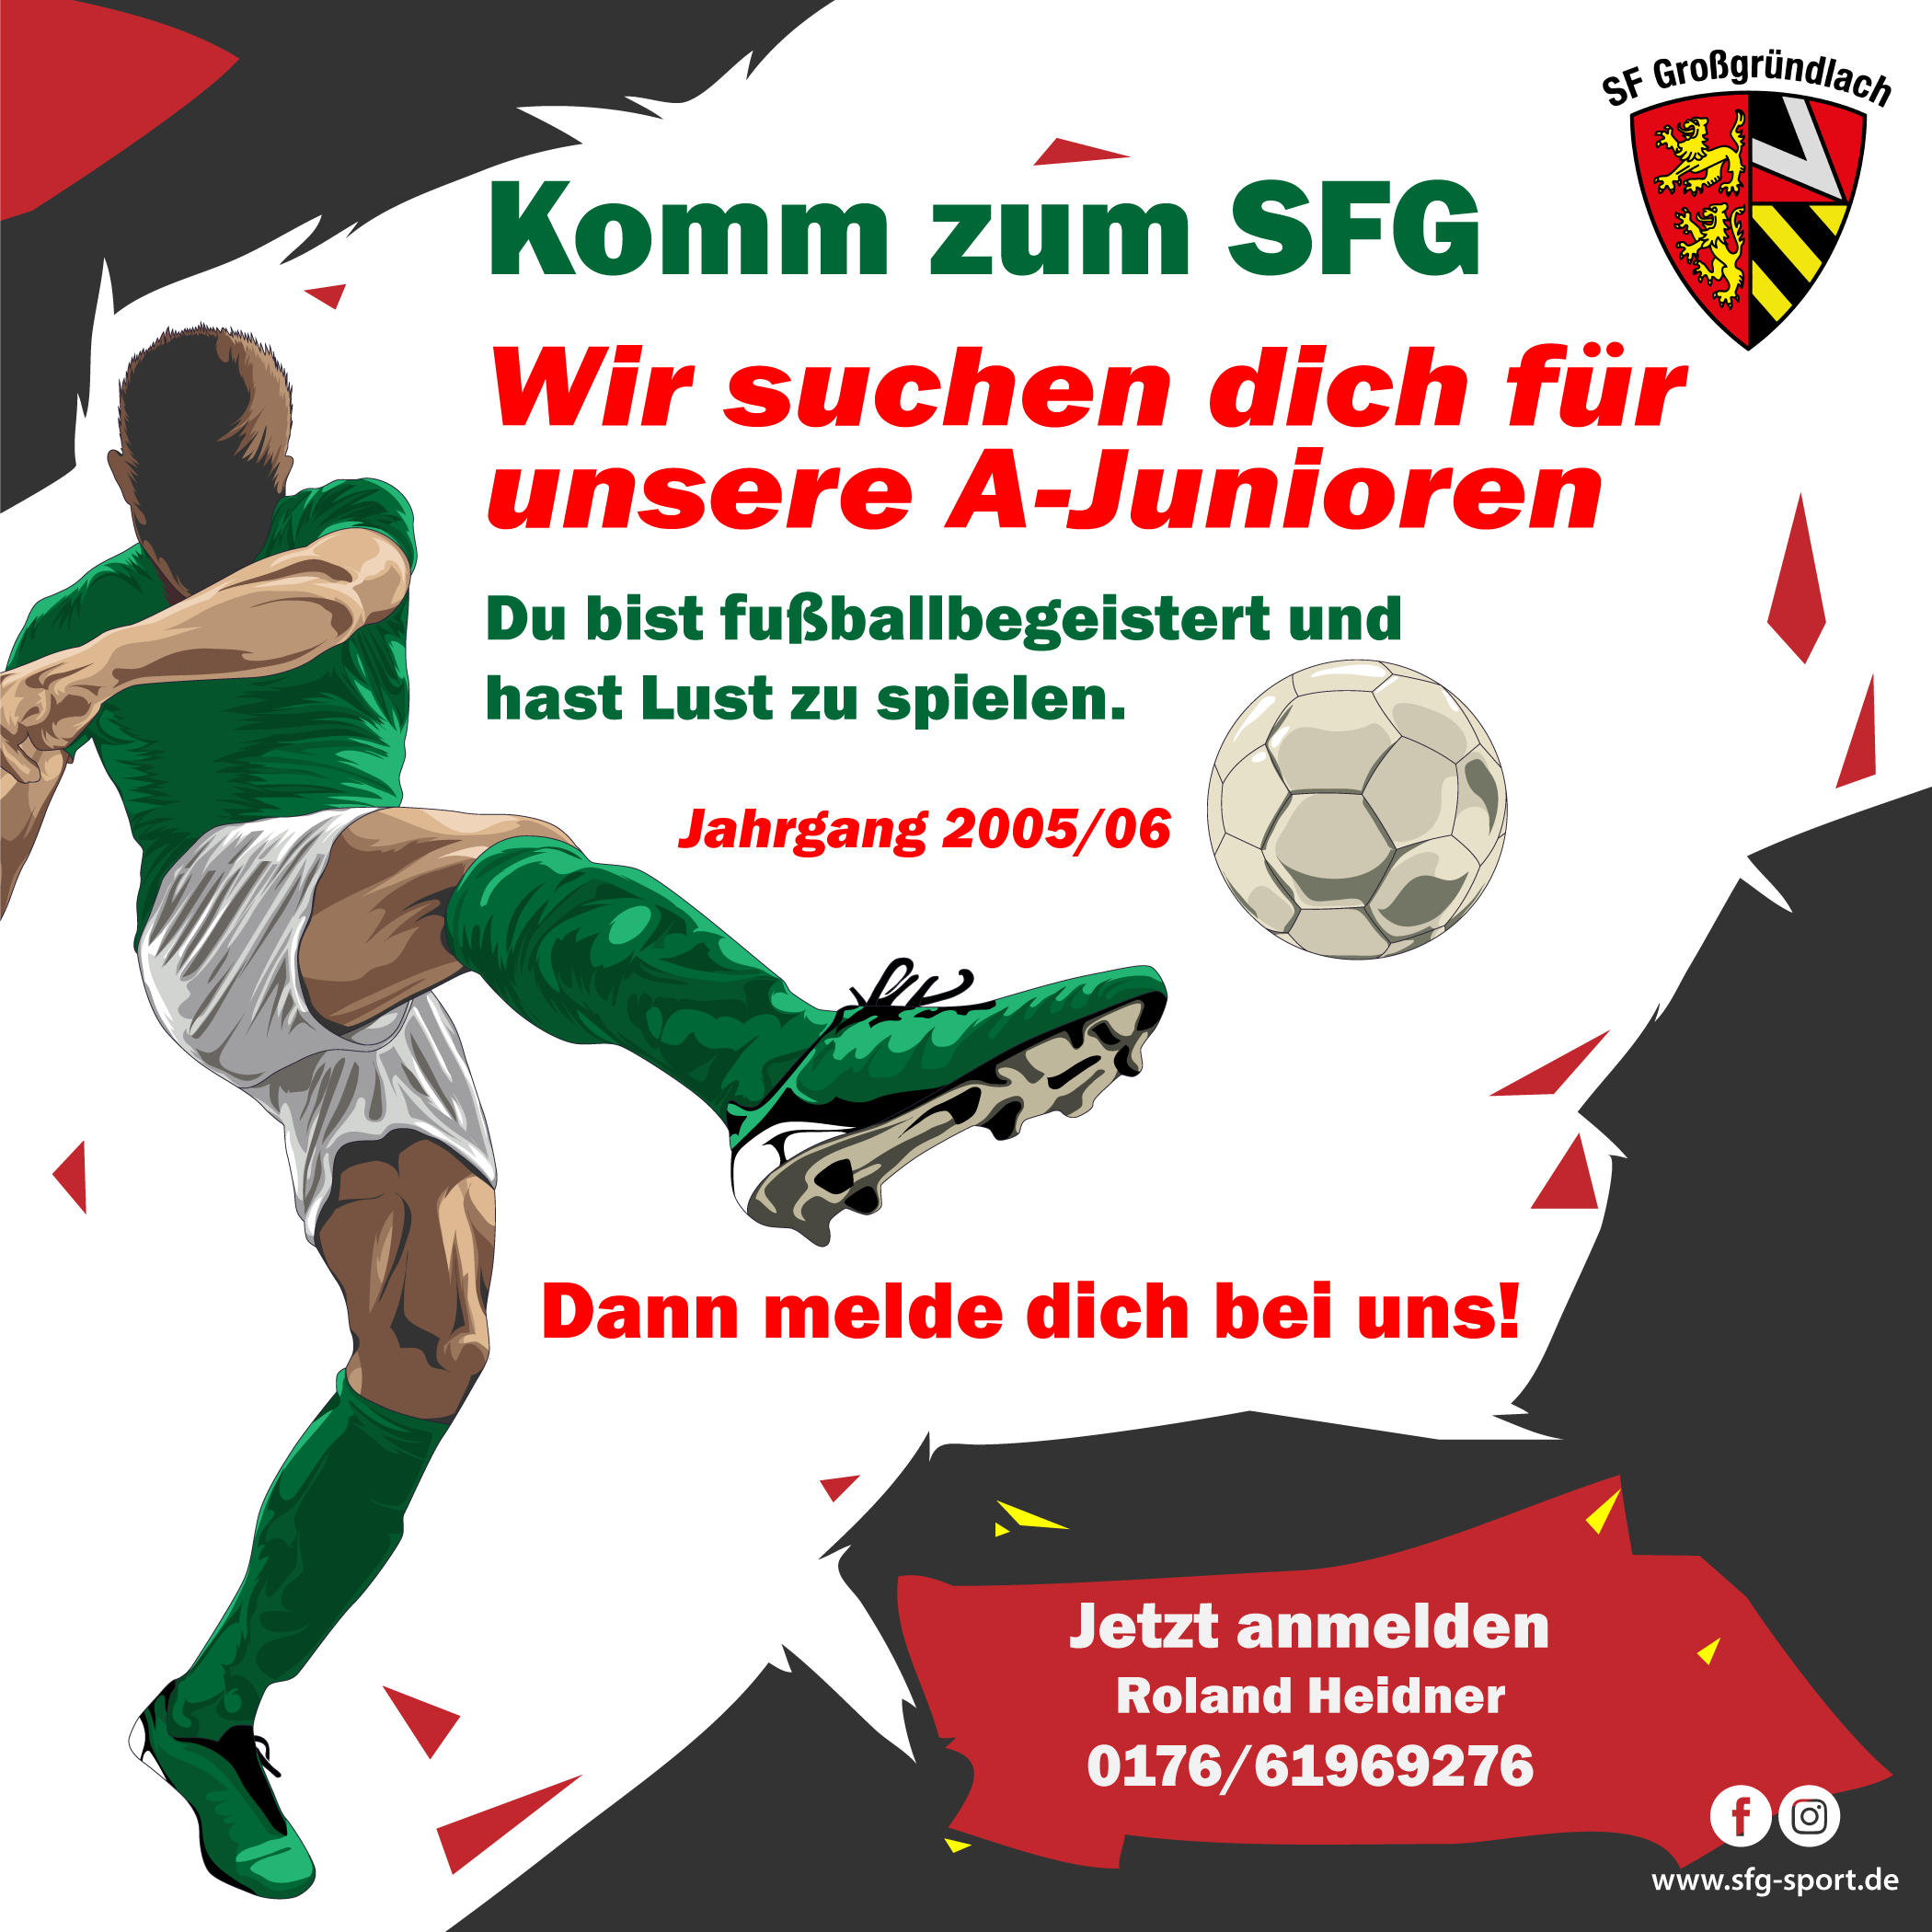 Sportfreunde Großgründlach: Wir suchen dich!